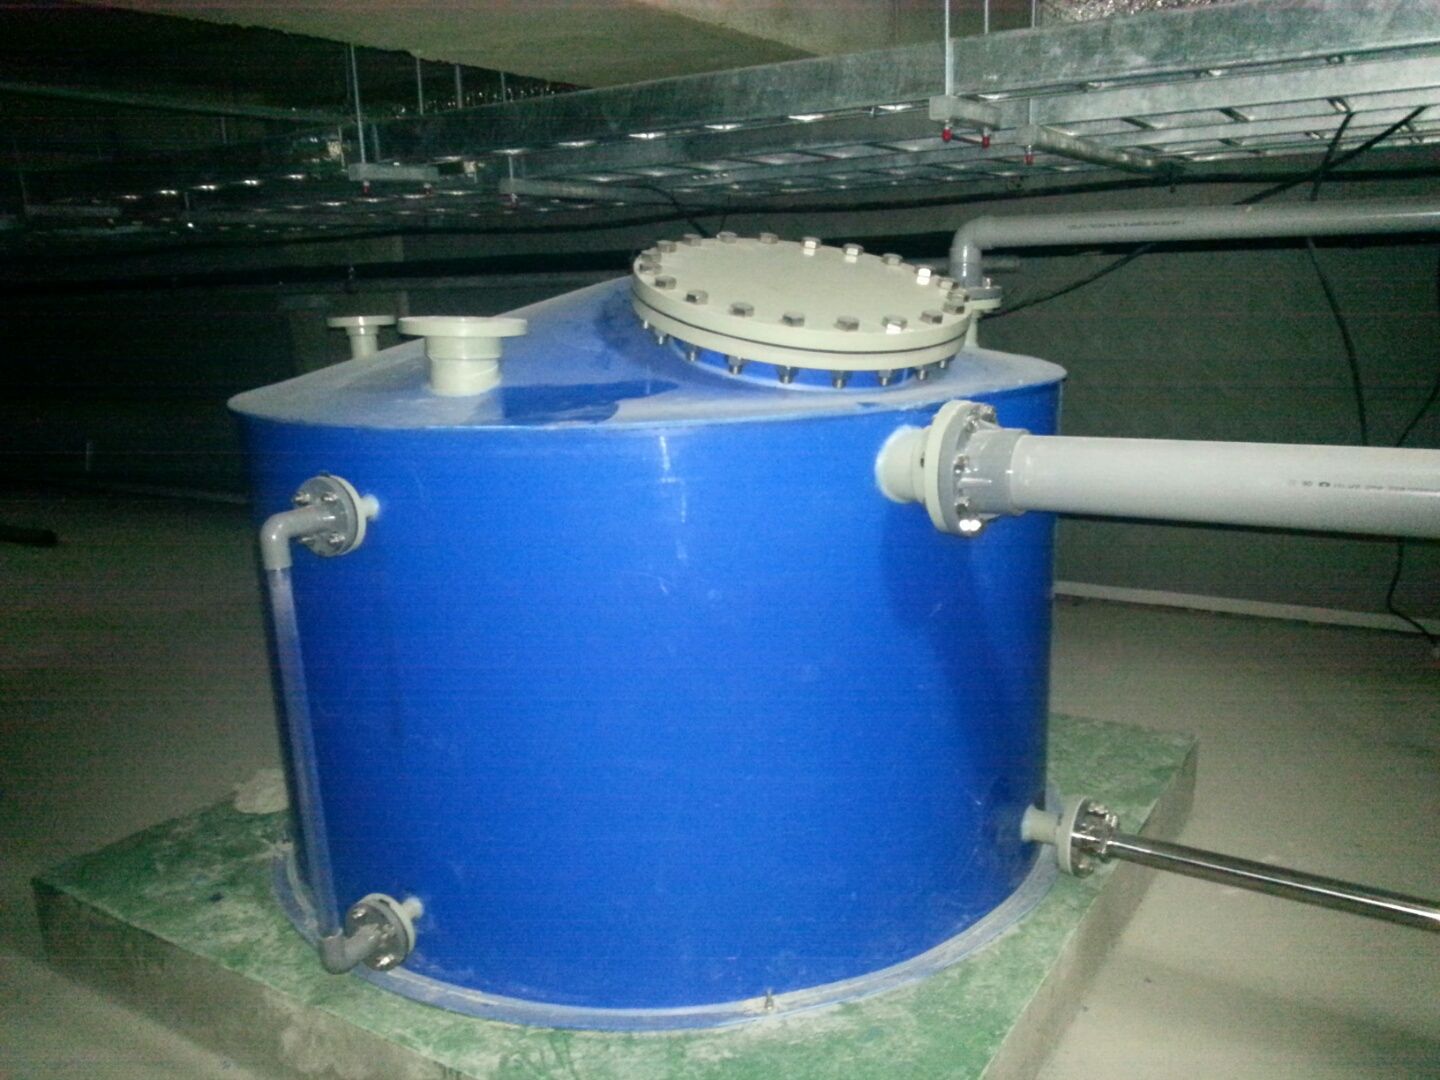 FRP물탱크 약품탱크 폐수탱크 강산 약산 내산